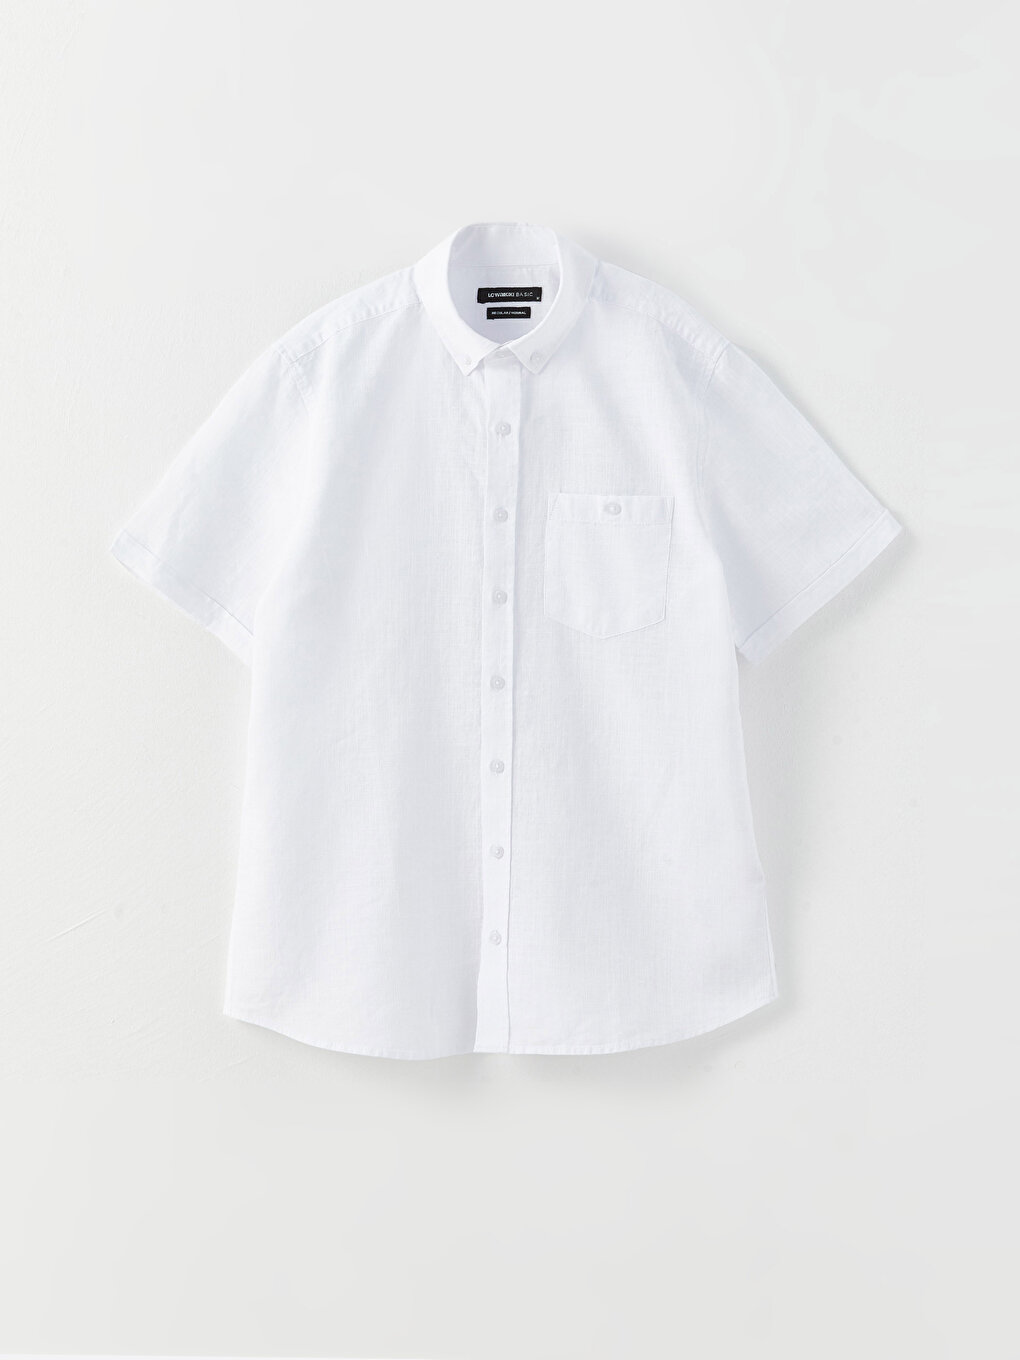 Regular Fit Short Sleeve Linen Blended Men's Shirt -S30111Z8-Q6K ...